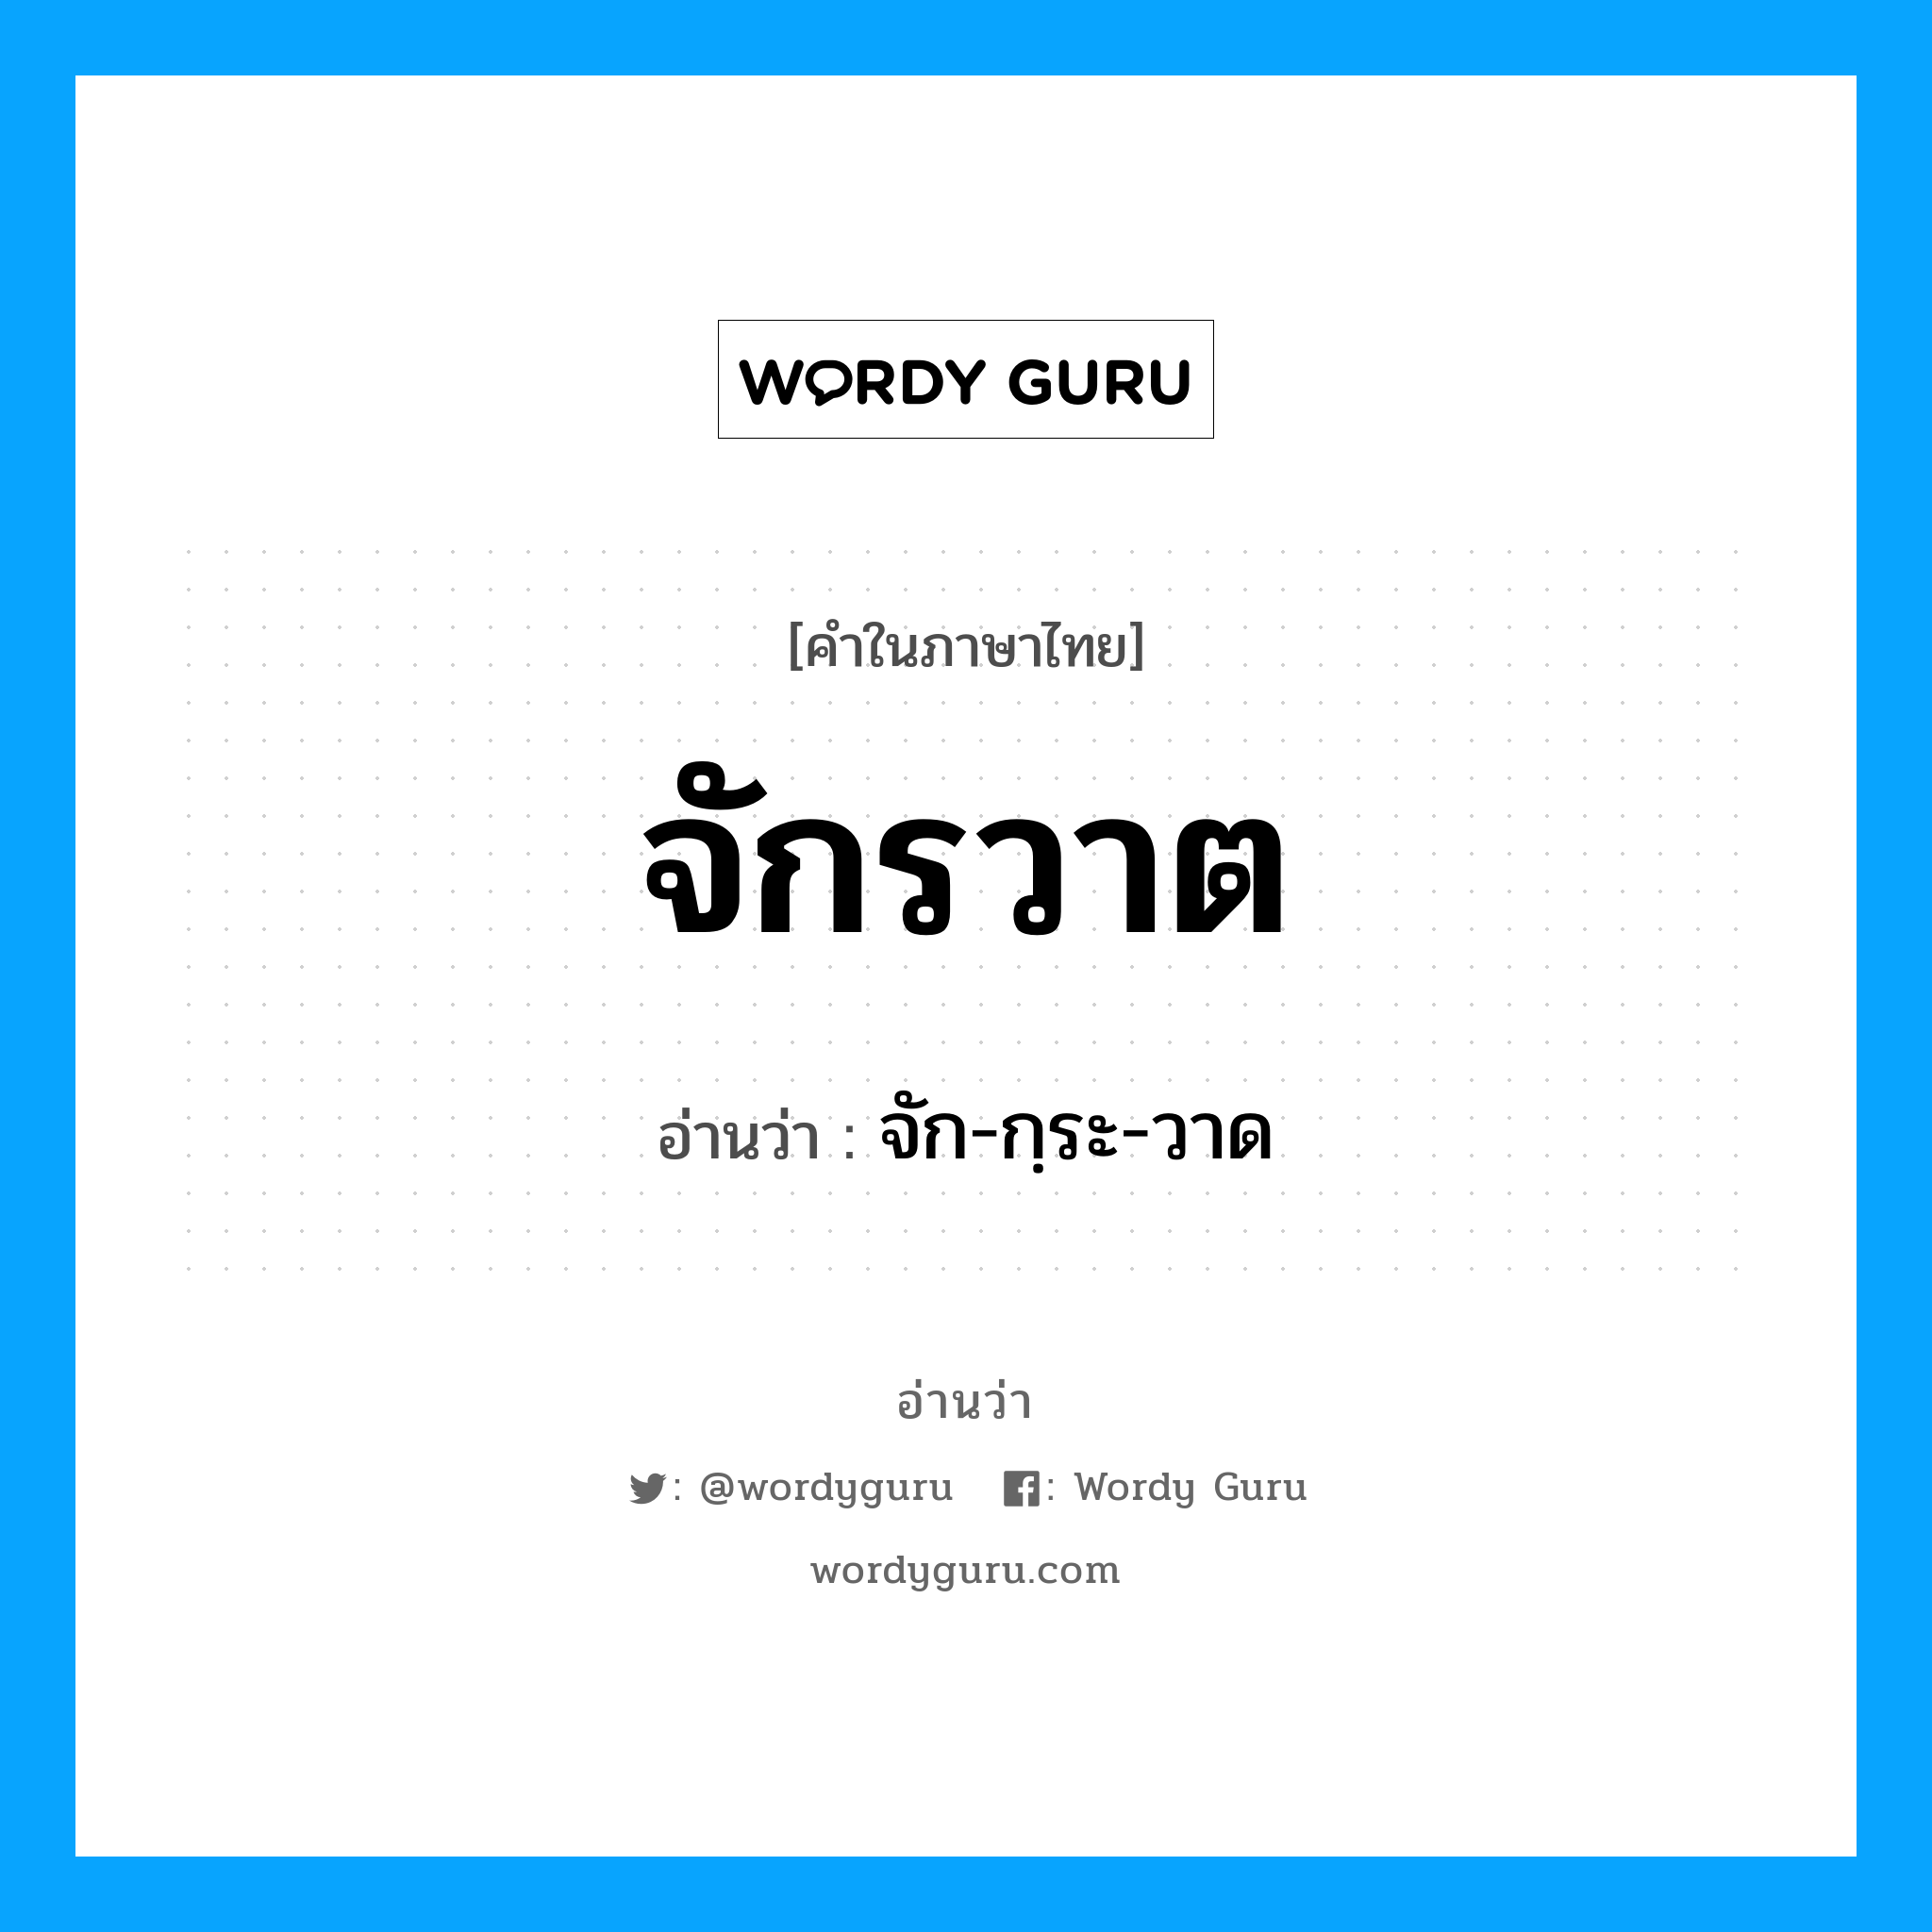 จัก-กฺระ-วาด เป็นคำอ่านของคำไหน?, คำในภาษาไทย จัก-กฺระ-วาด อ่านว่า จักรวาต